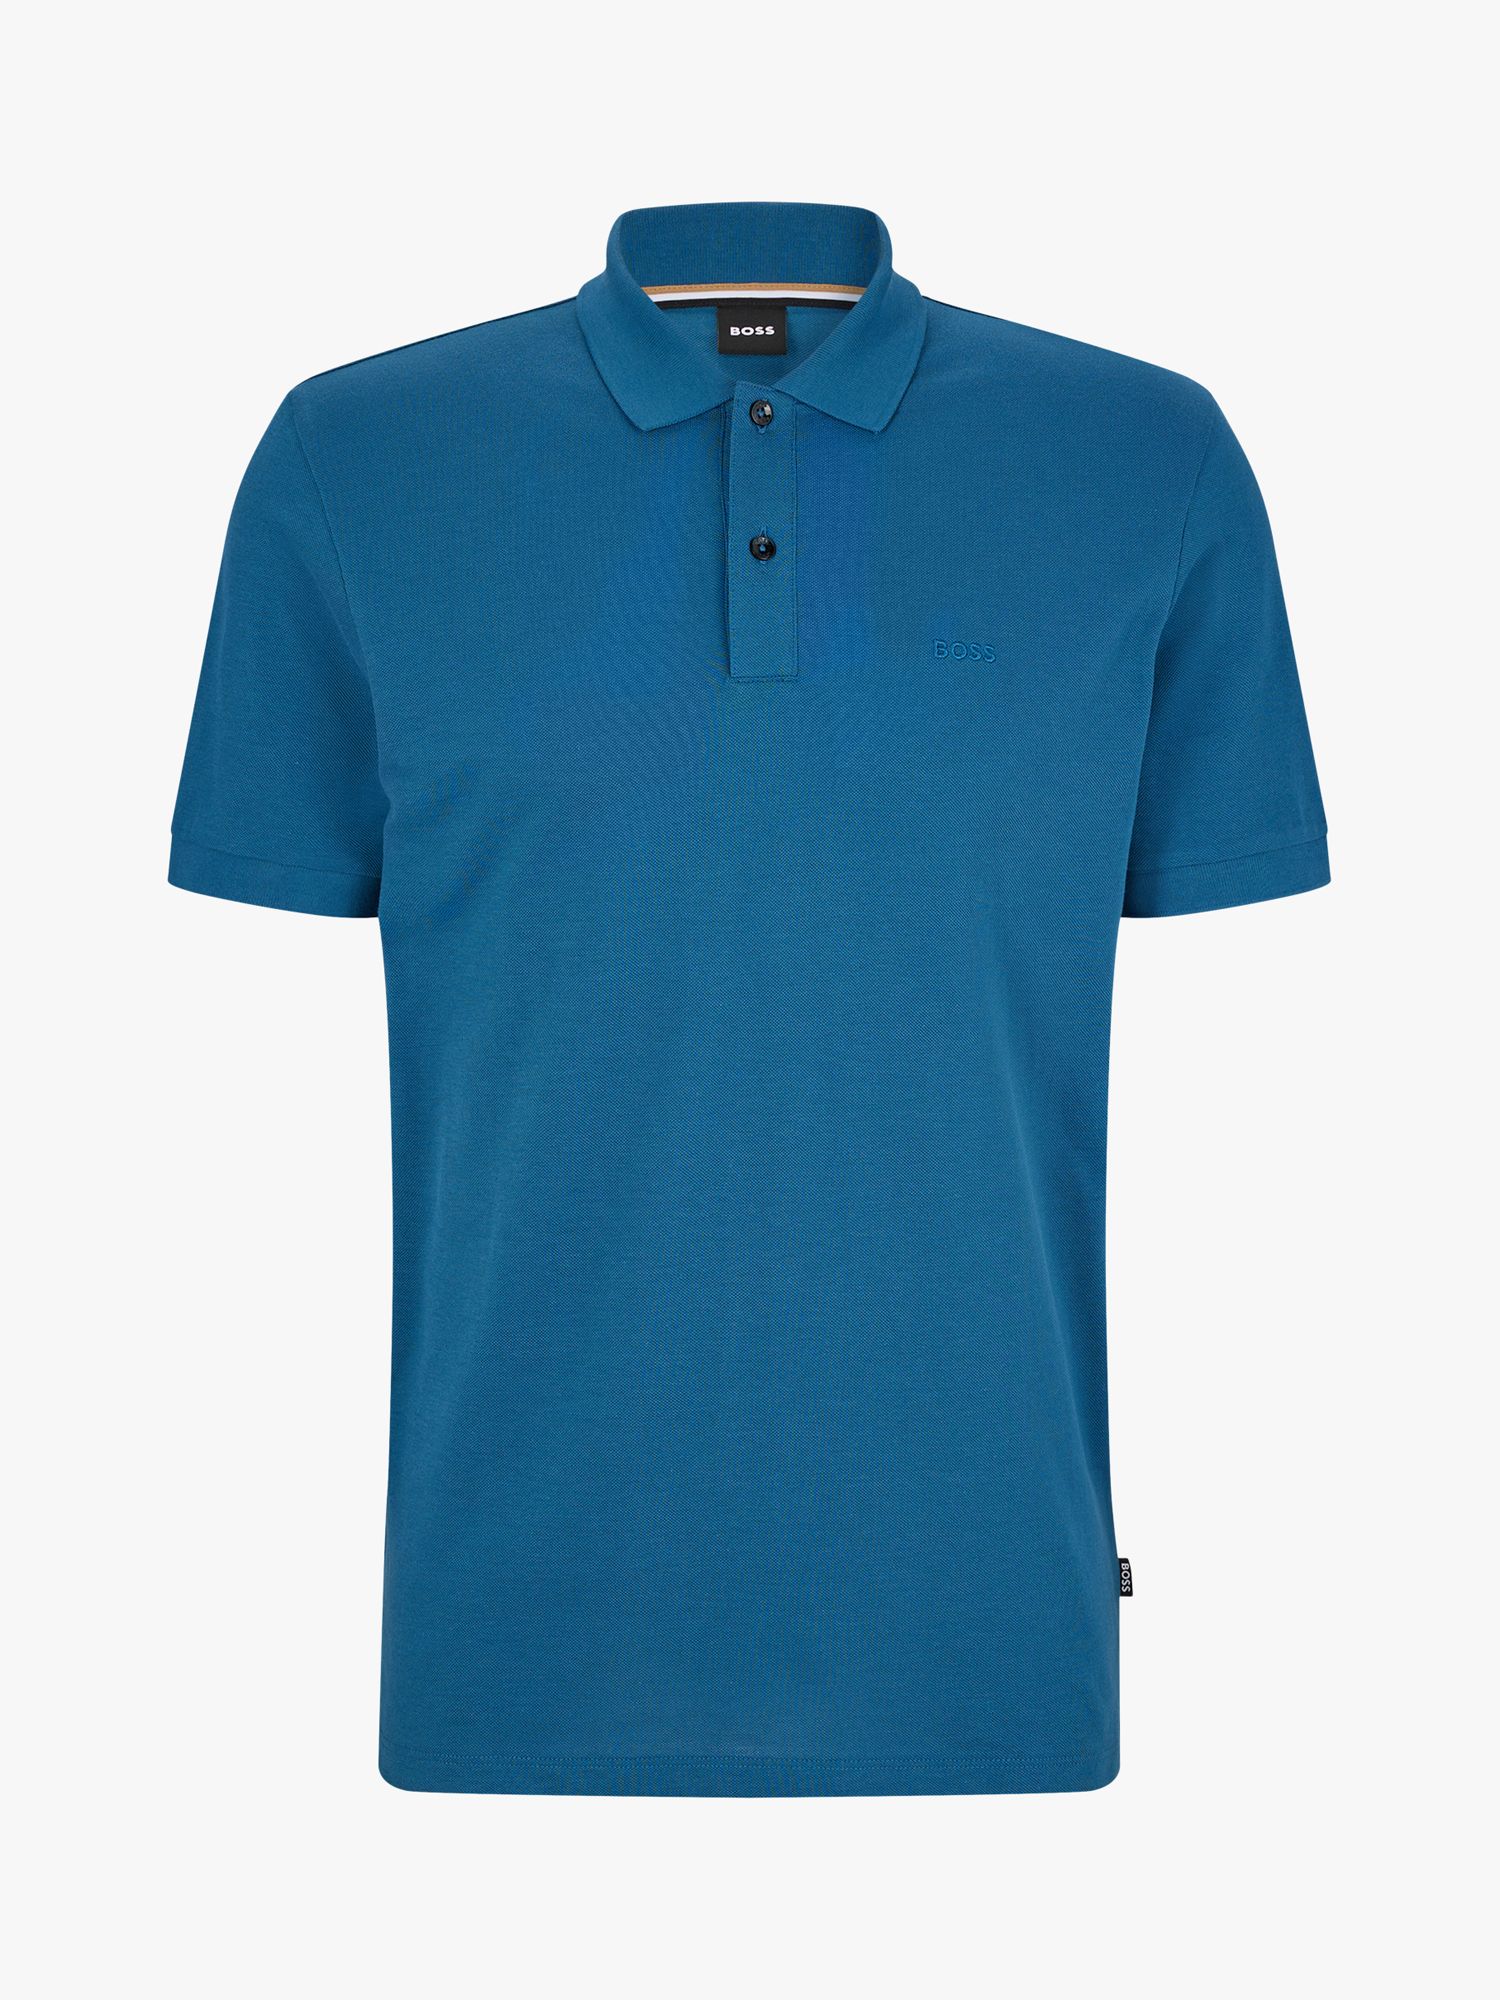 BOSS Pallas Regular Fit Polo Shirt, Open Blue at John Lewis & Partners